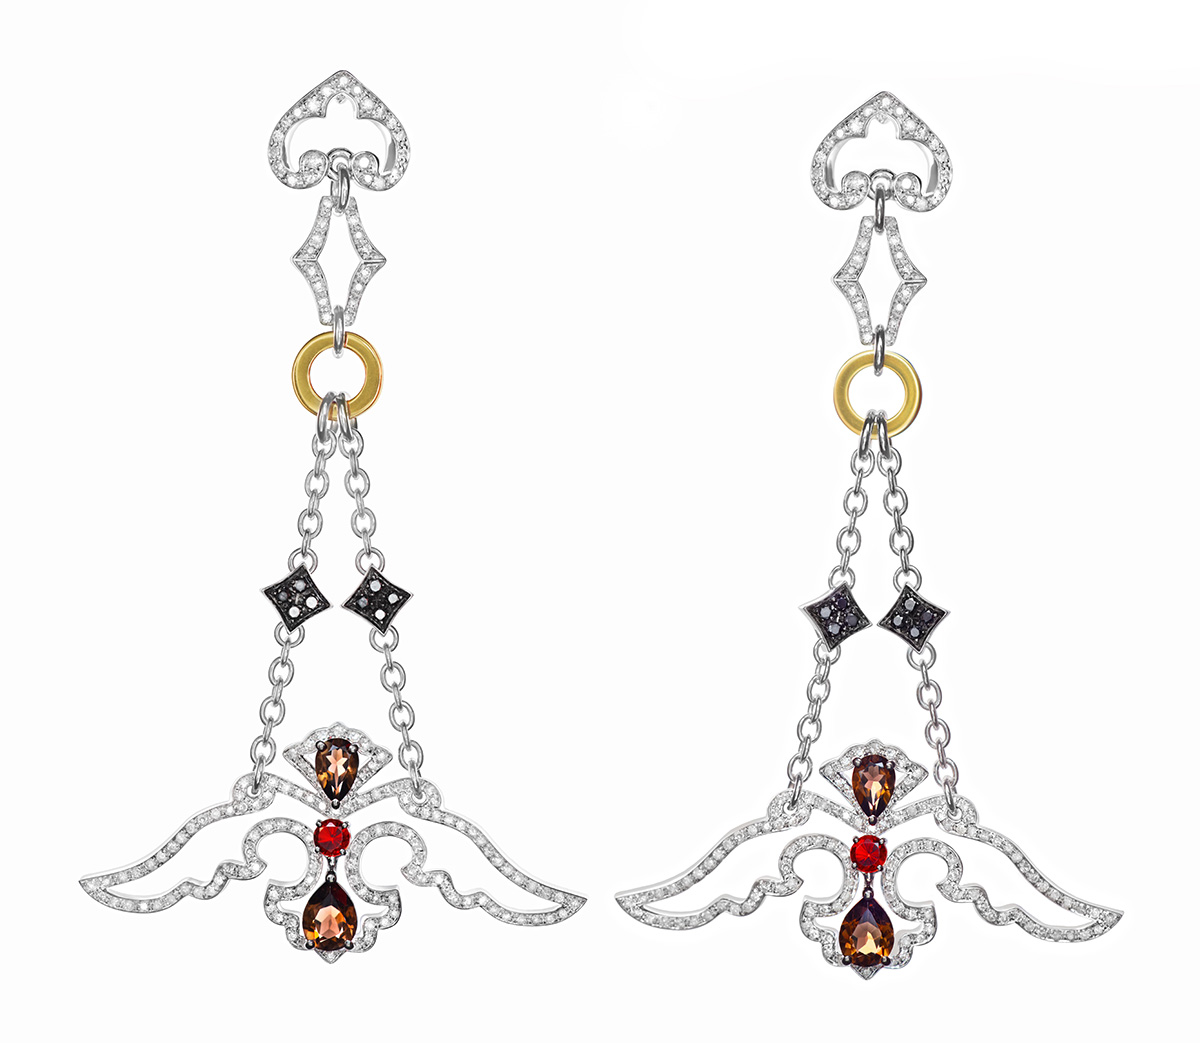 Luxury fine jewellery earrings by brand Damiani